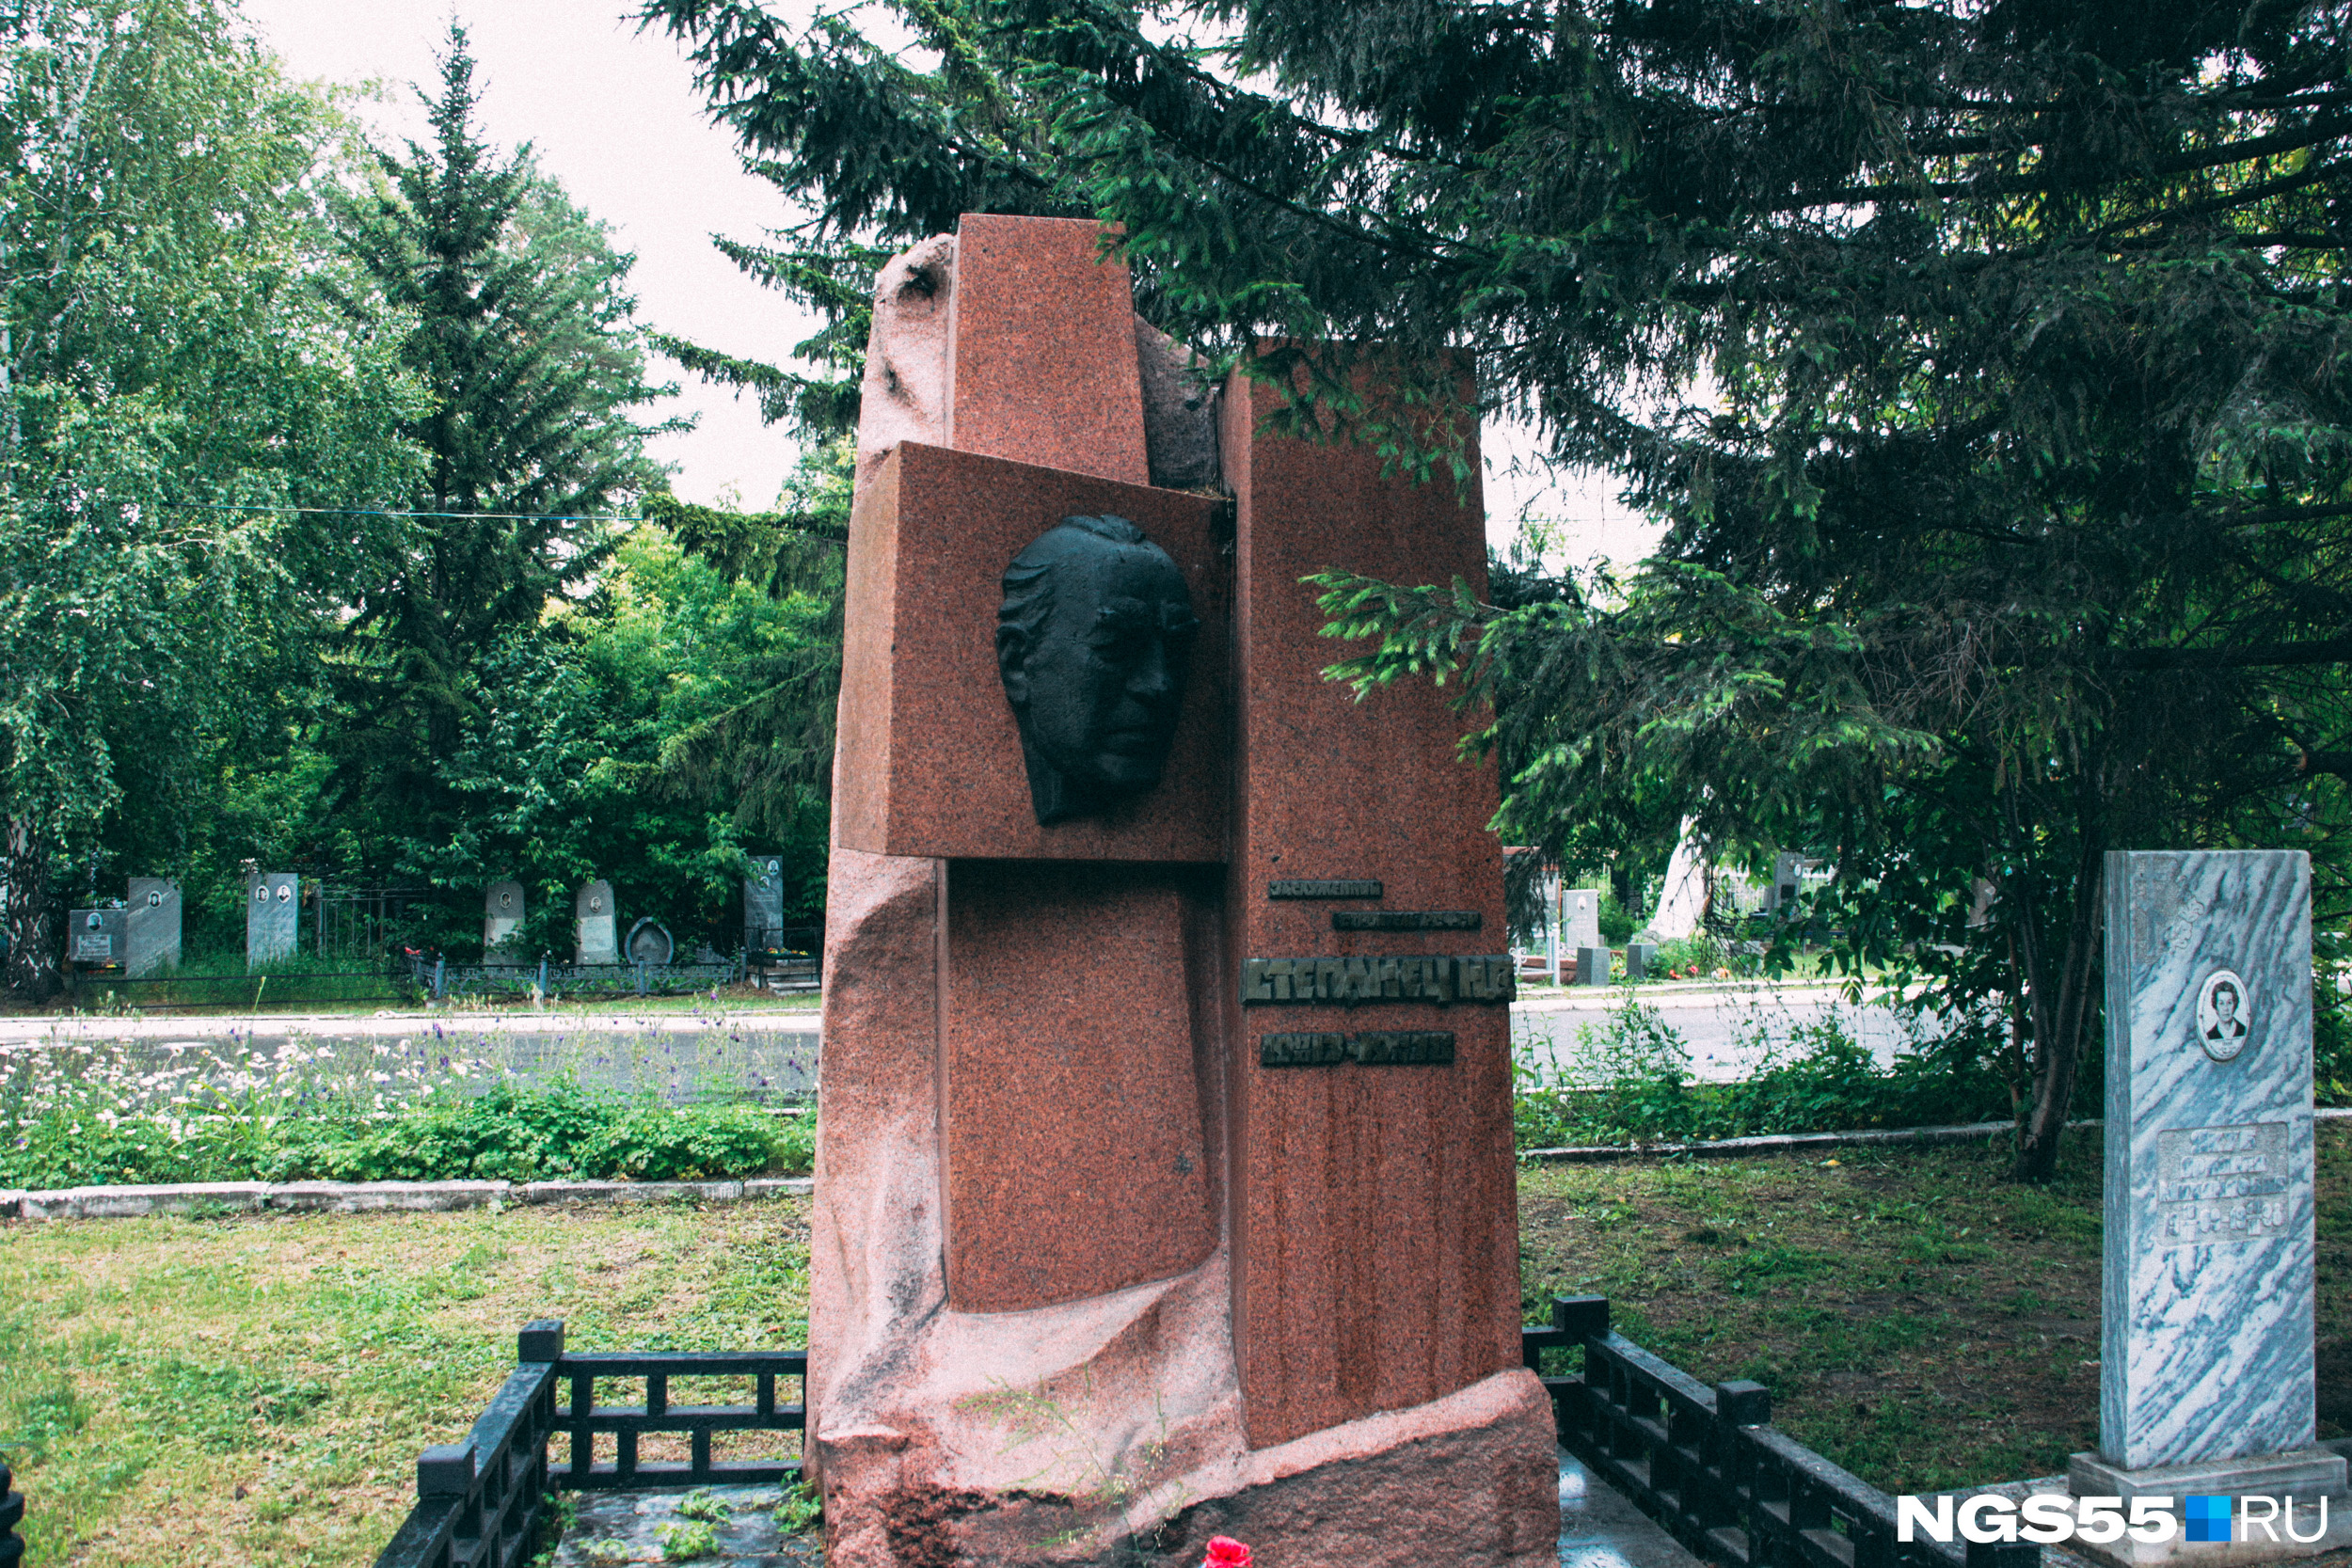 Так выглядит памятник, установленный на месте захоронения Николая Степанца